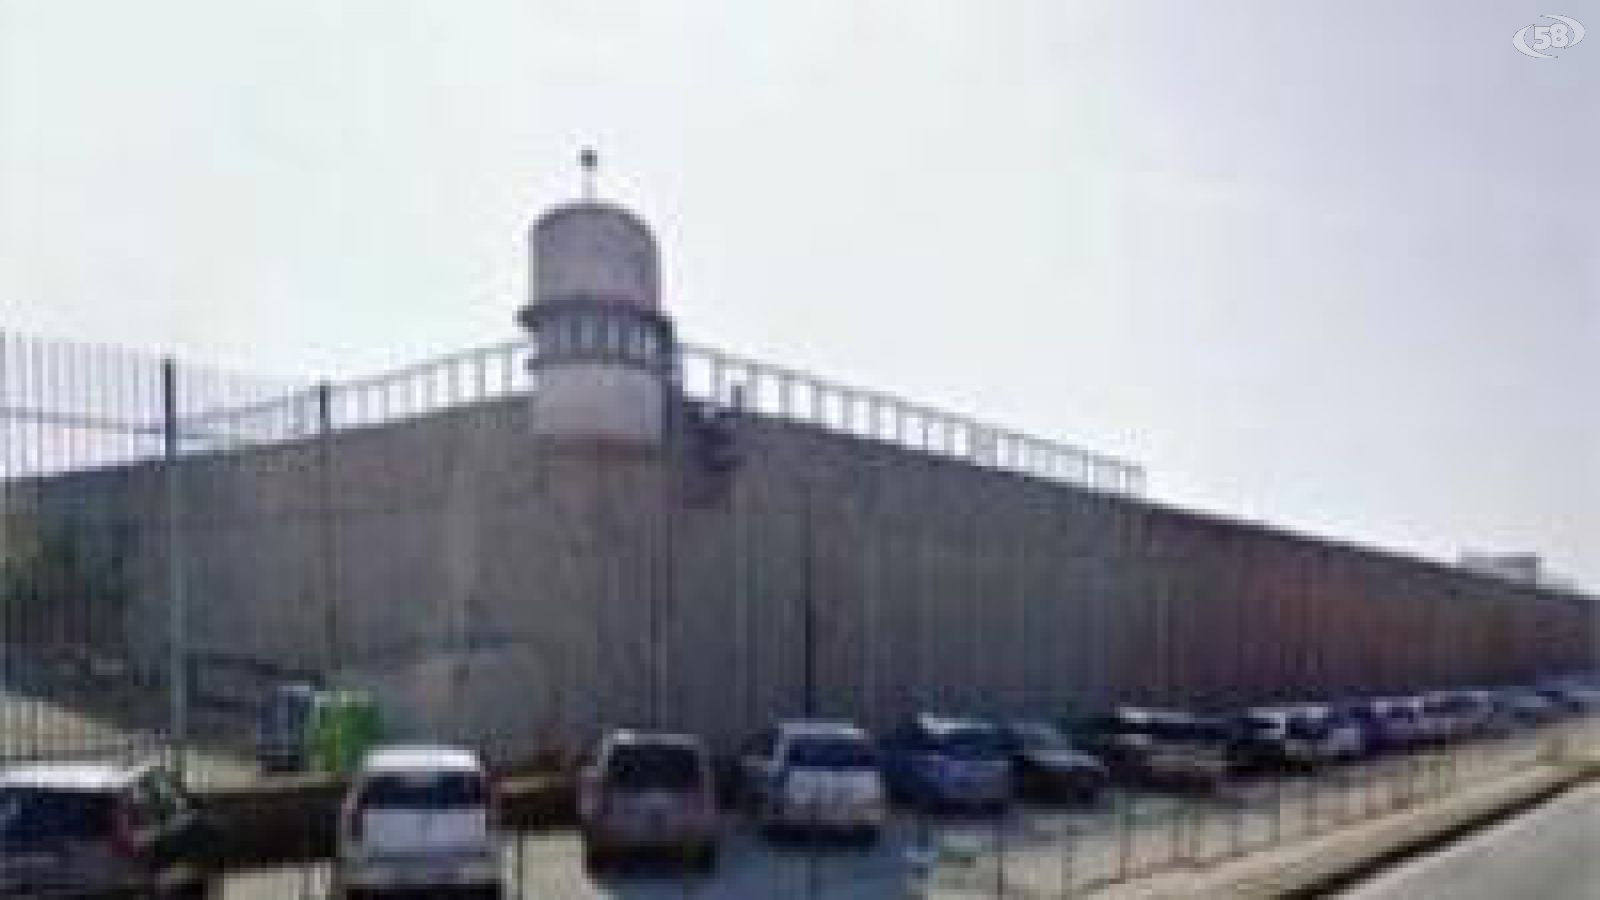 carcere ariano